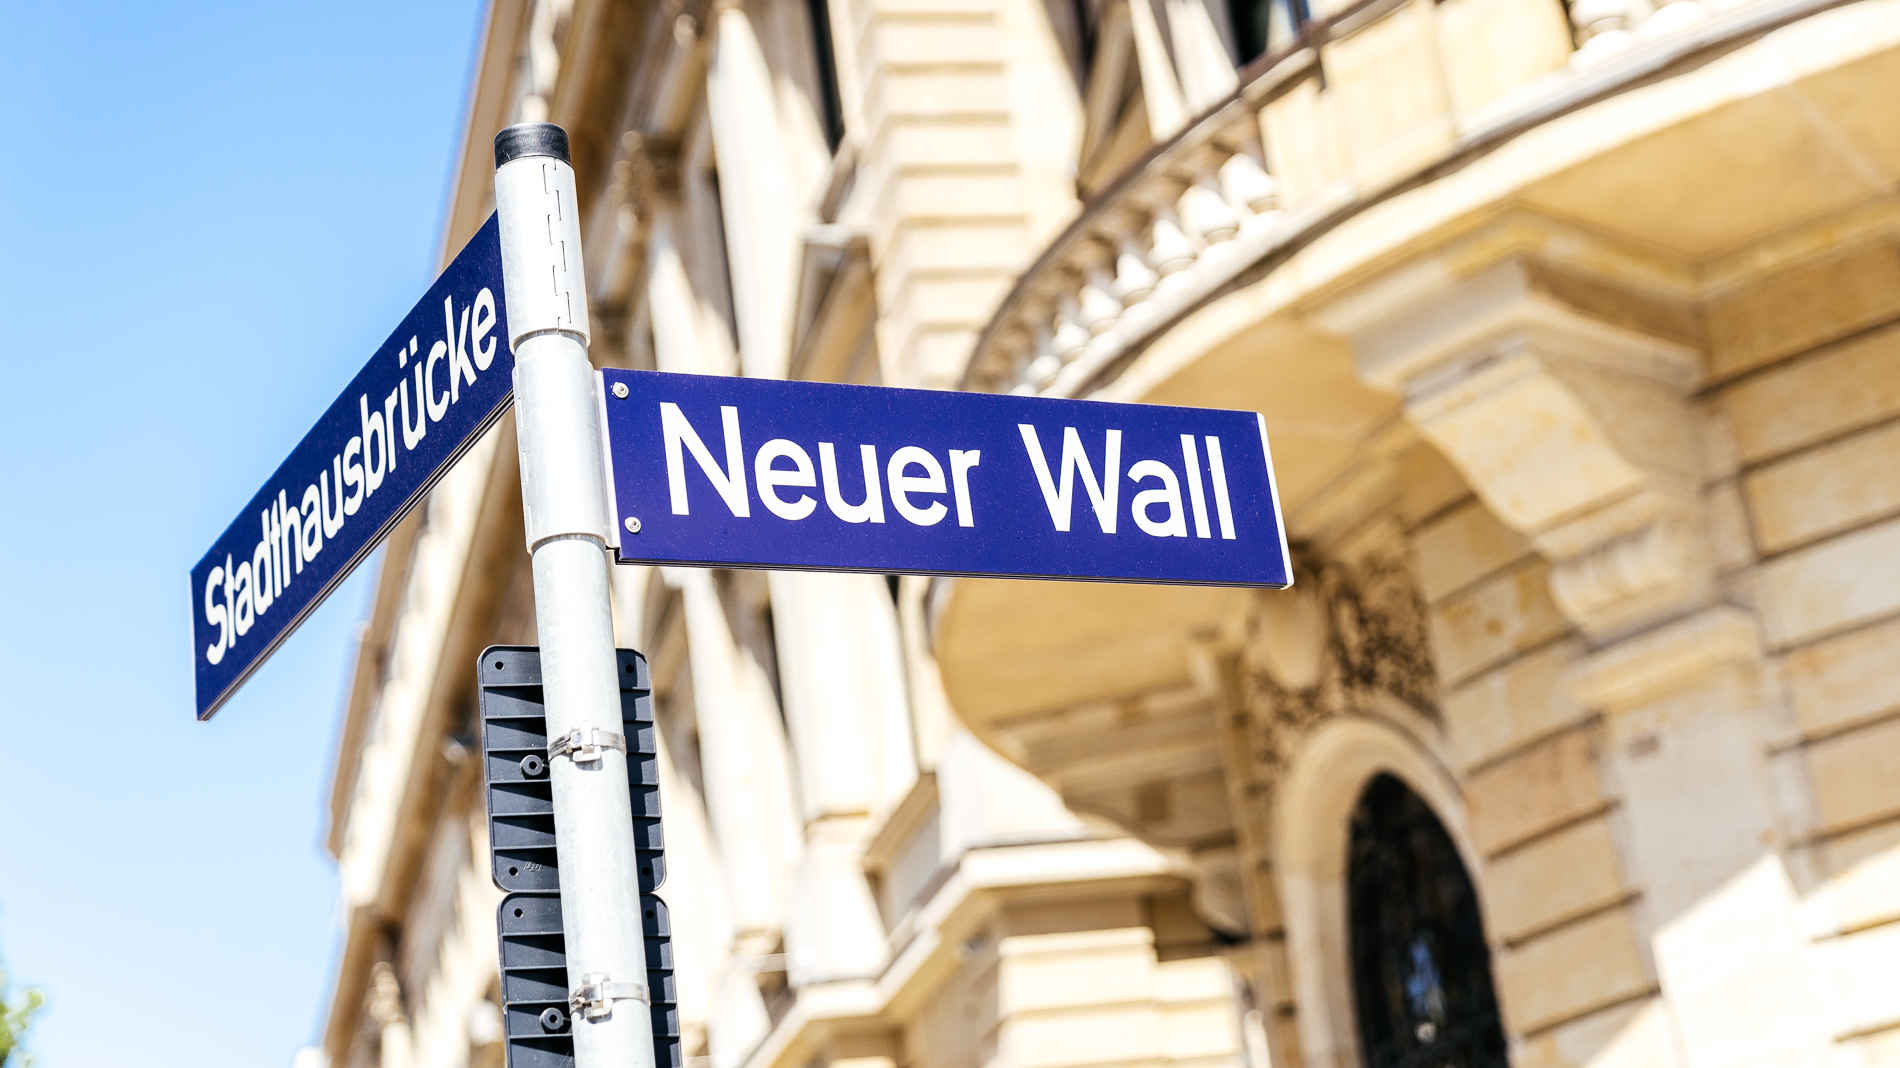 blaues Straßenschild Neuer Wall in Hamburg - Adresse der Kanzlei von Ferber Langer